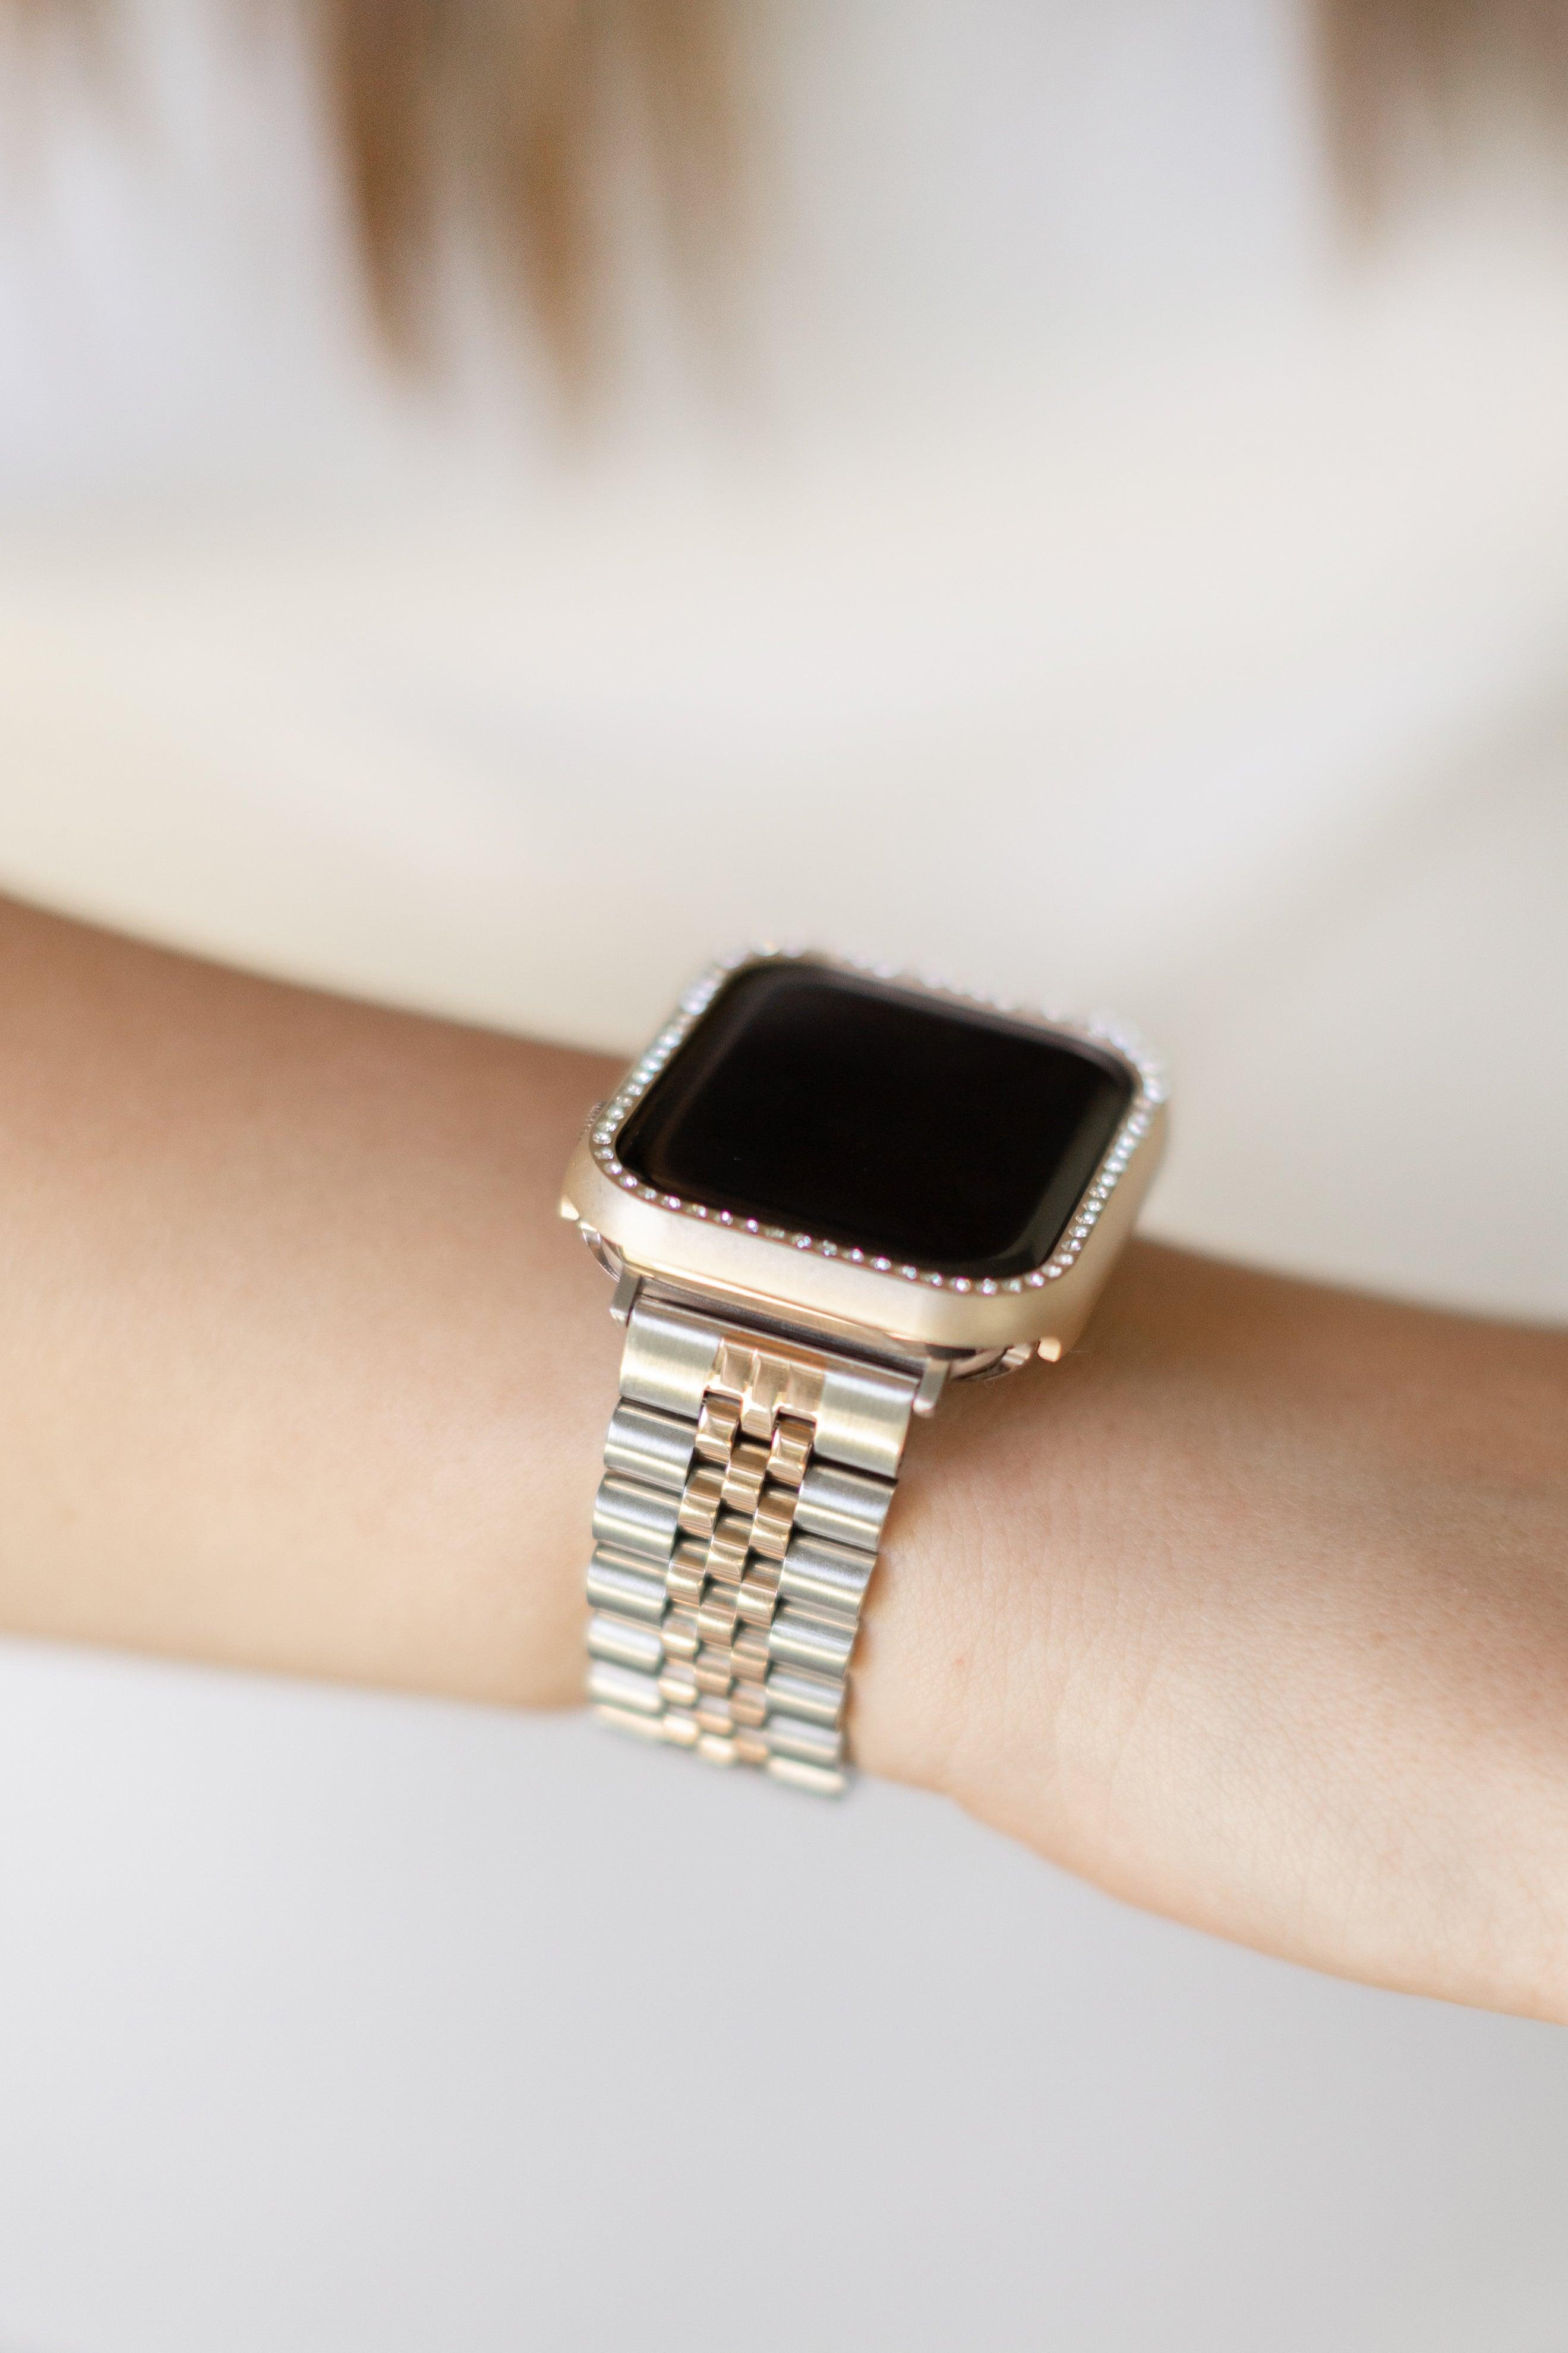 Goldenerre: Best Women's Apple Watch Bands and Jewelry – Goldenerre